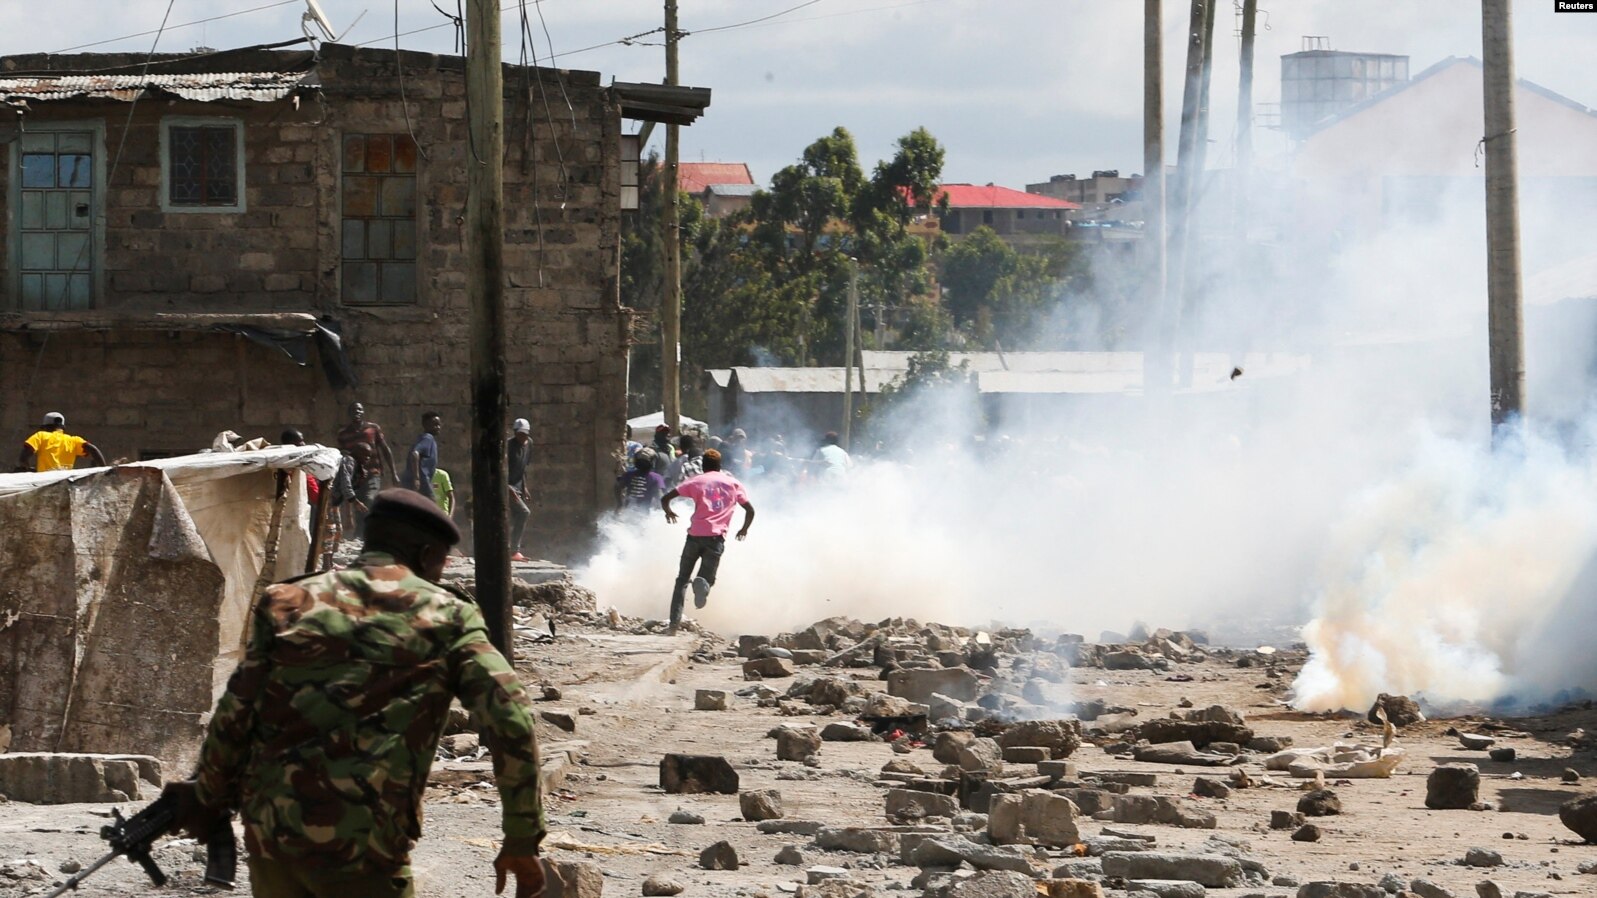 Thousands of Mukuru kwa Njenga residents at risk of mass evictions